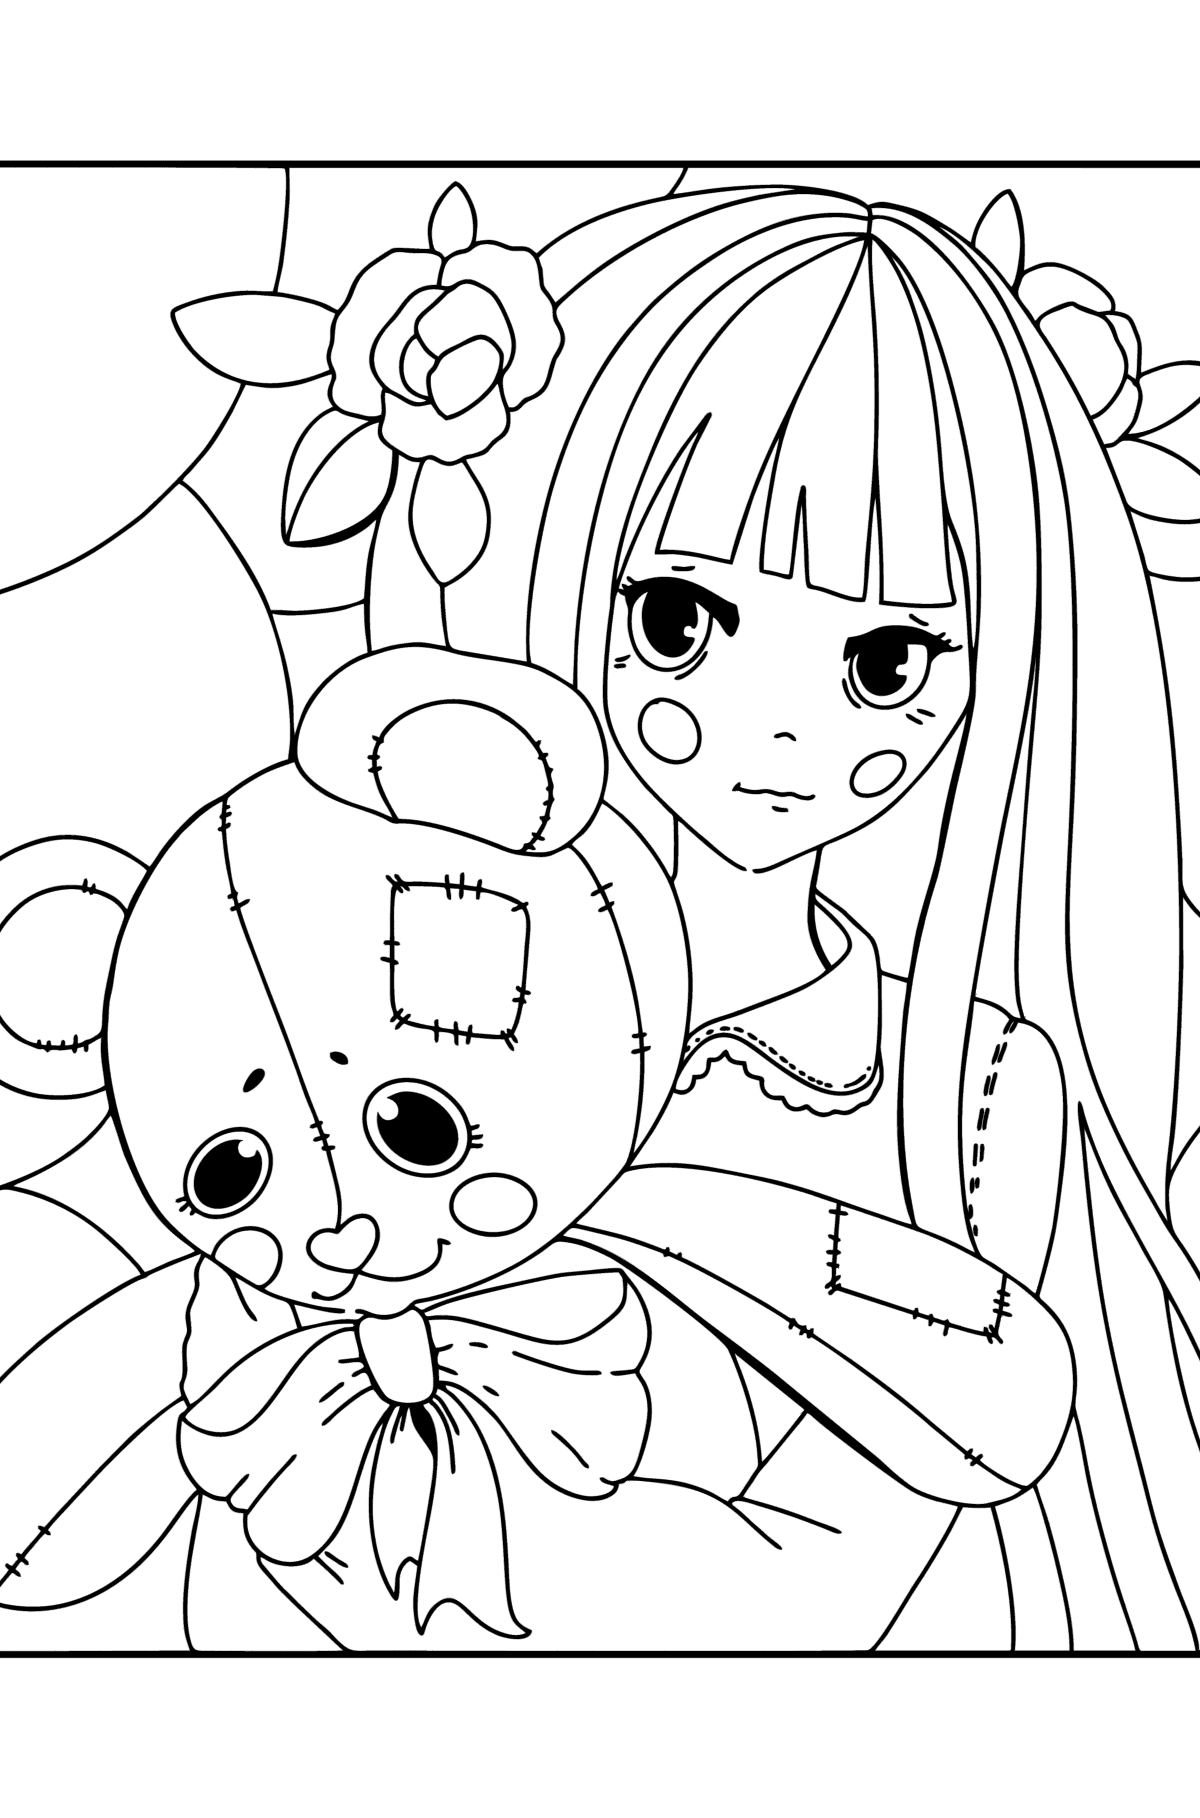 Anime-jente som holder en teddy tegning til fargelegging - Tegninger til fargelegging for barn